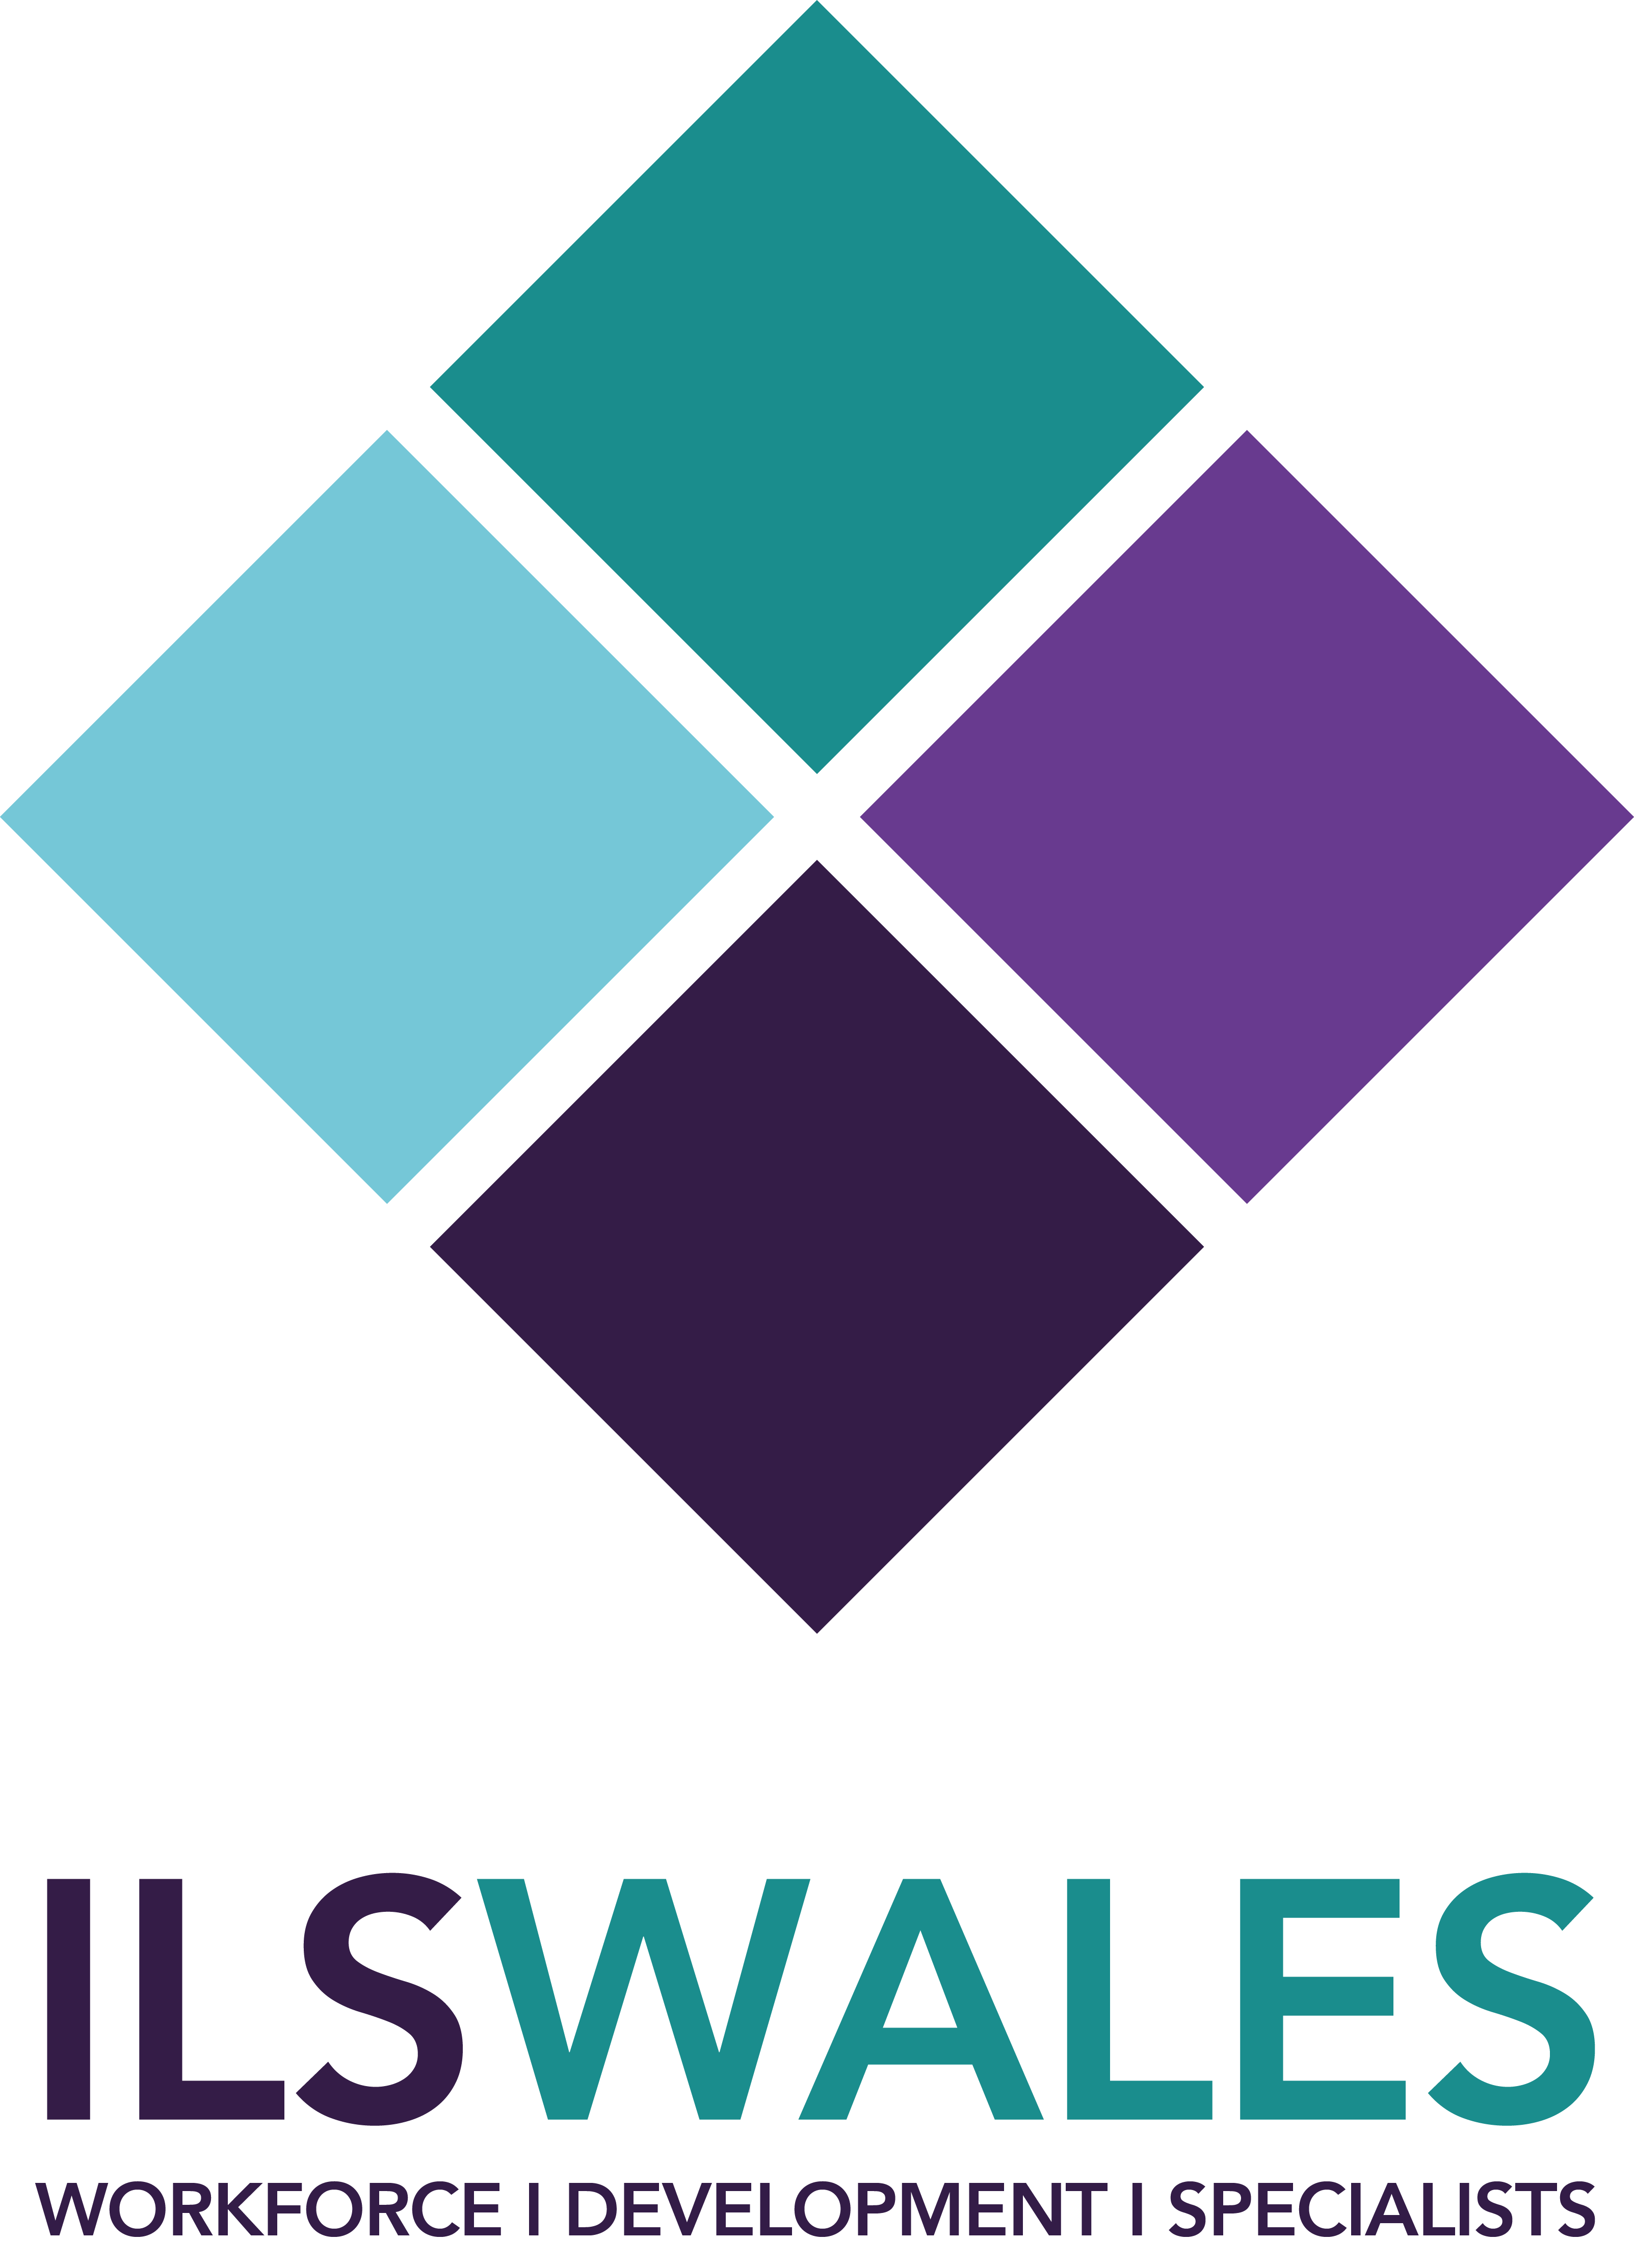 Workforce Development Specialists in Wales